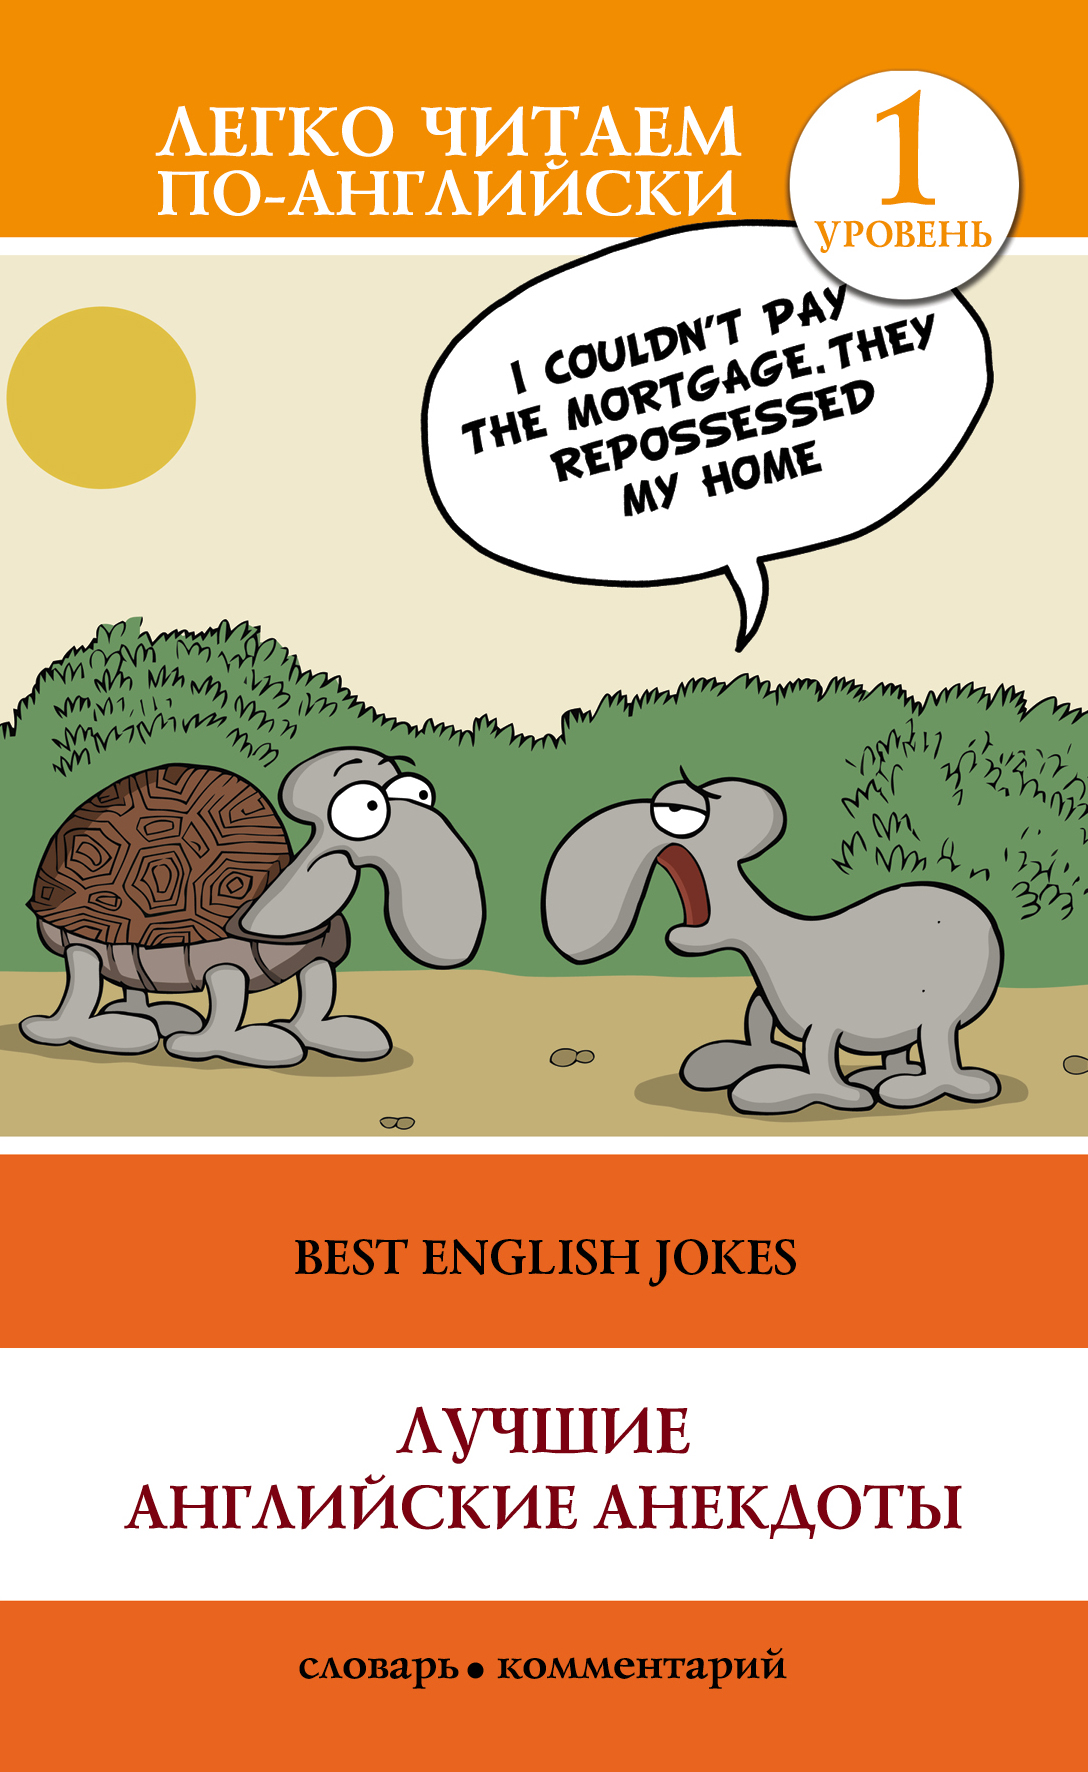 Языковые шутки. Анекдоты. Английский анекдот. Шутки на английском. Лучшие английские анекдоты.